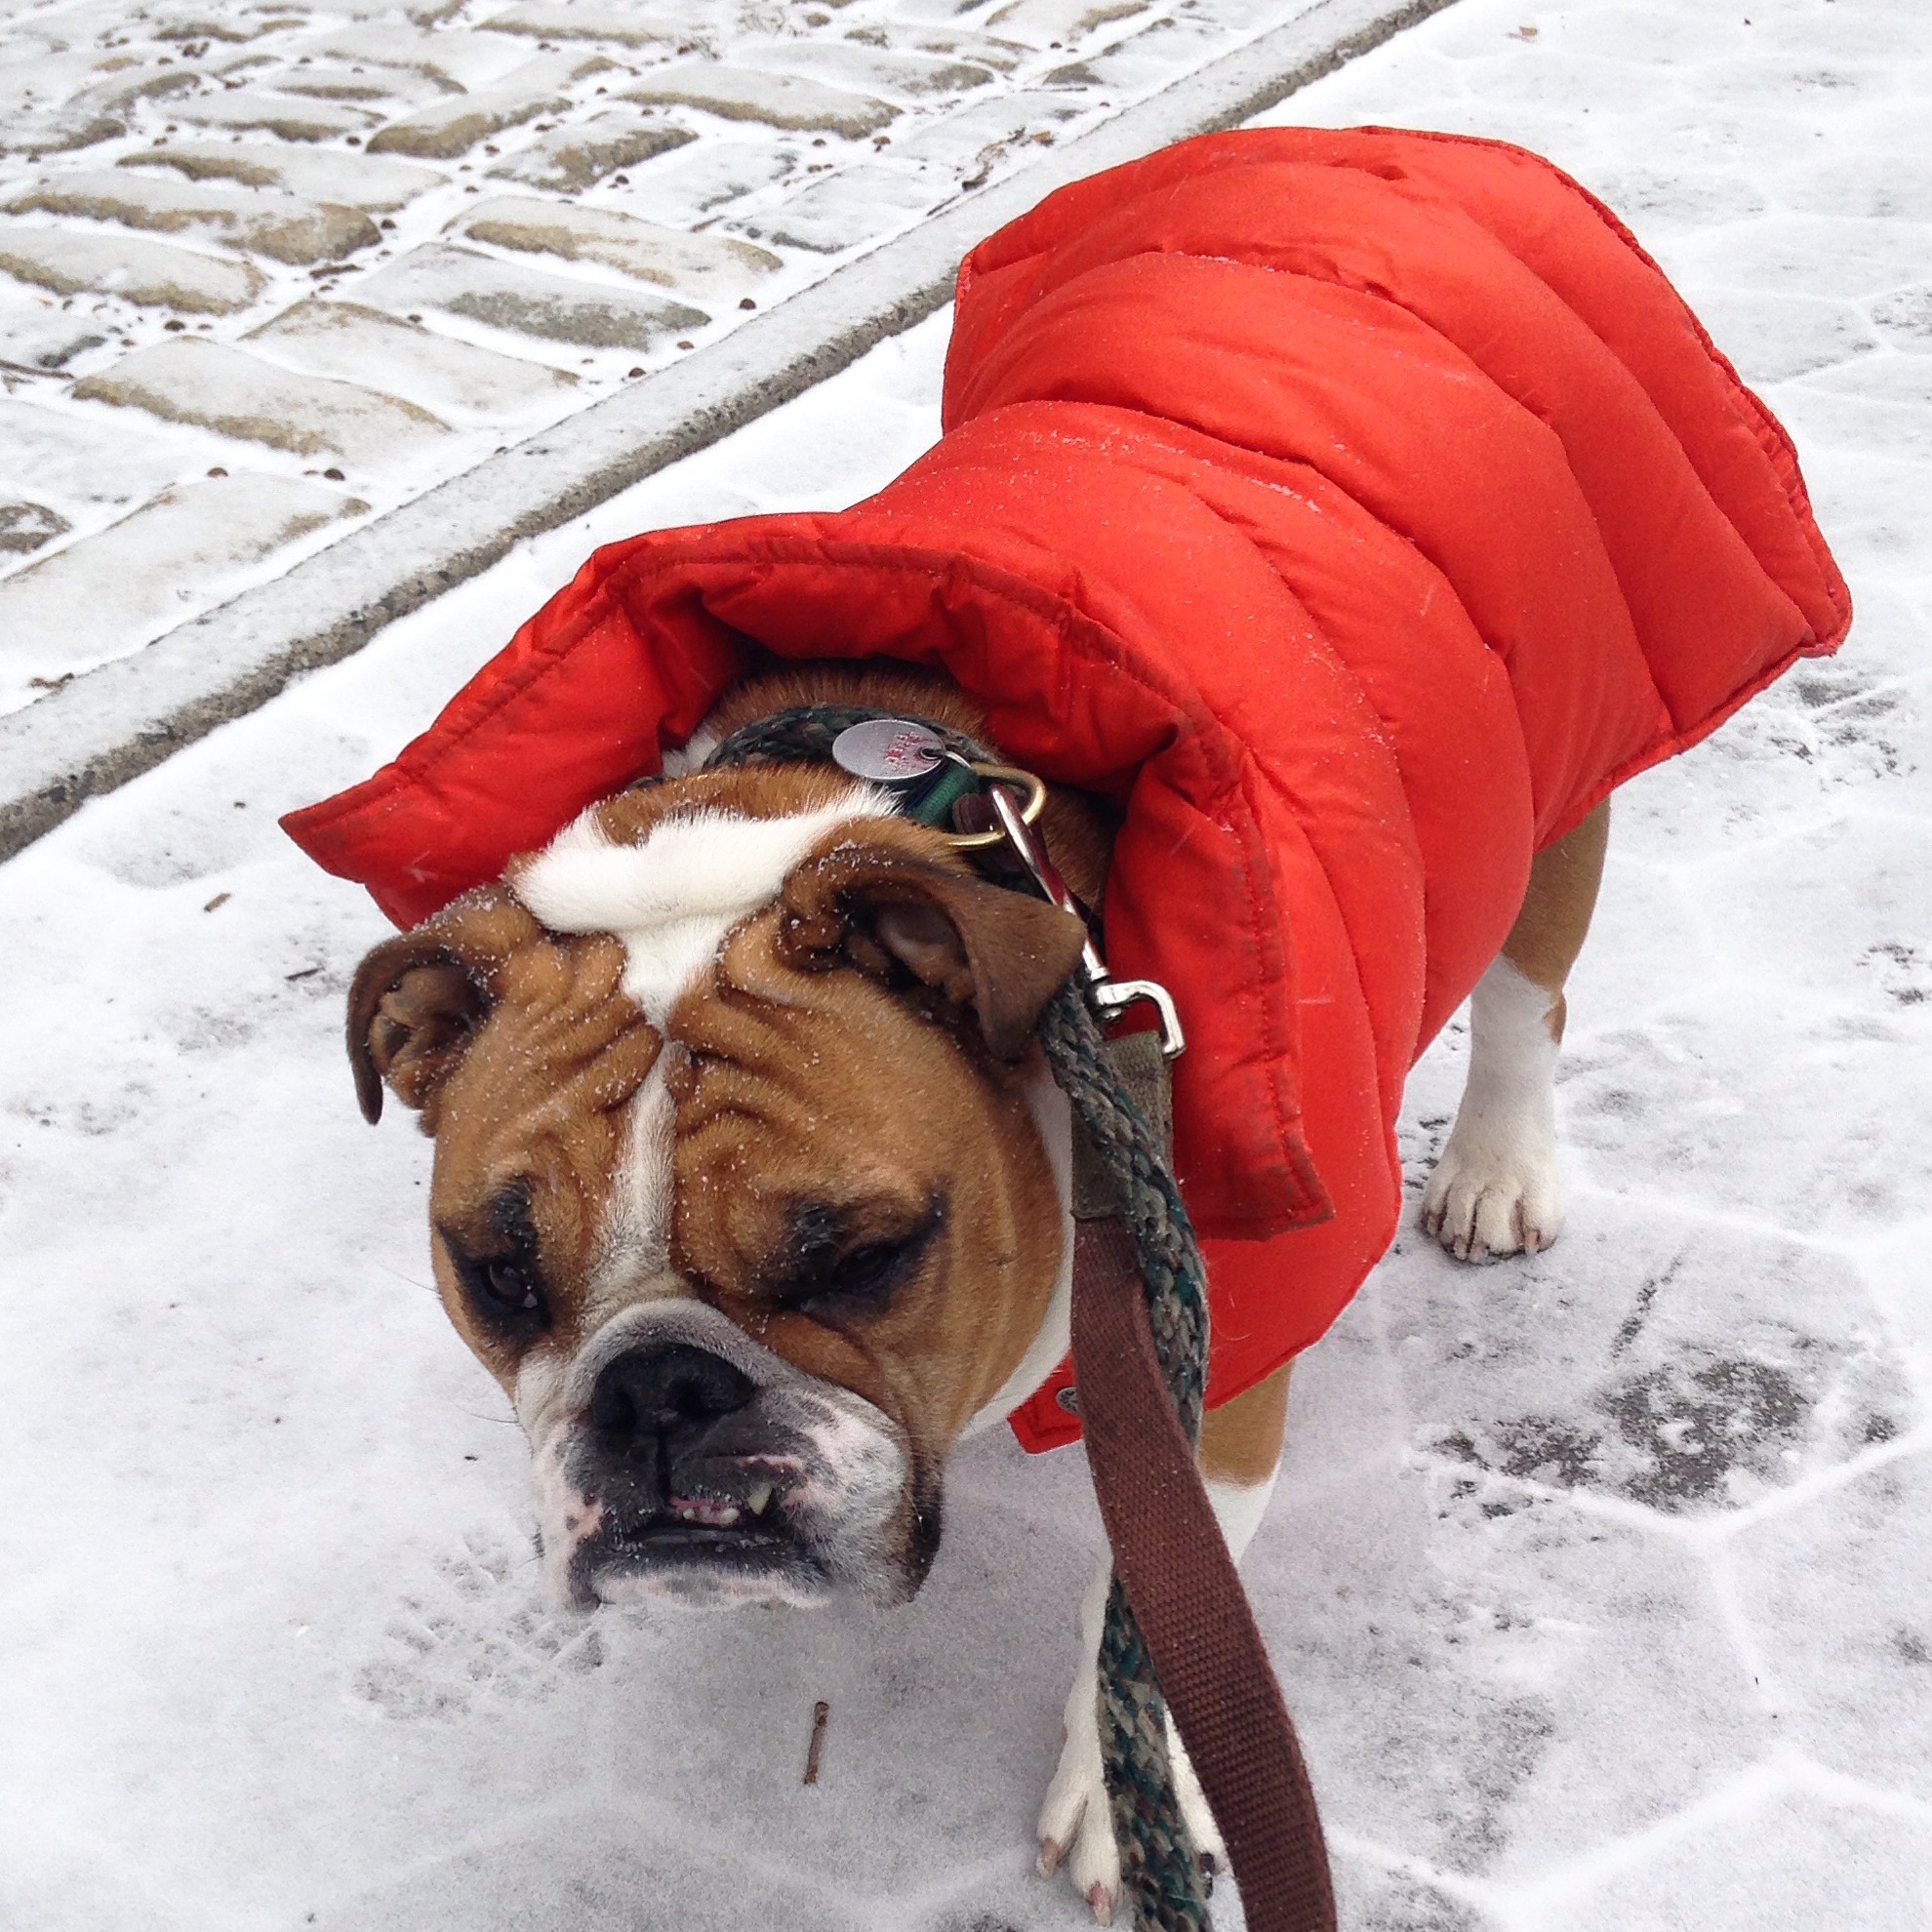 English bulldog in an orange coat in the snow